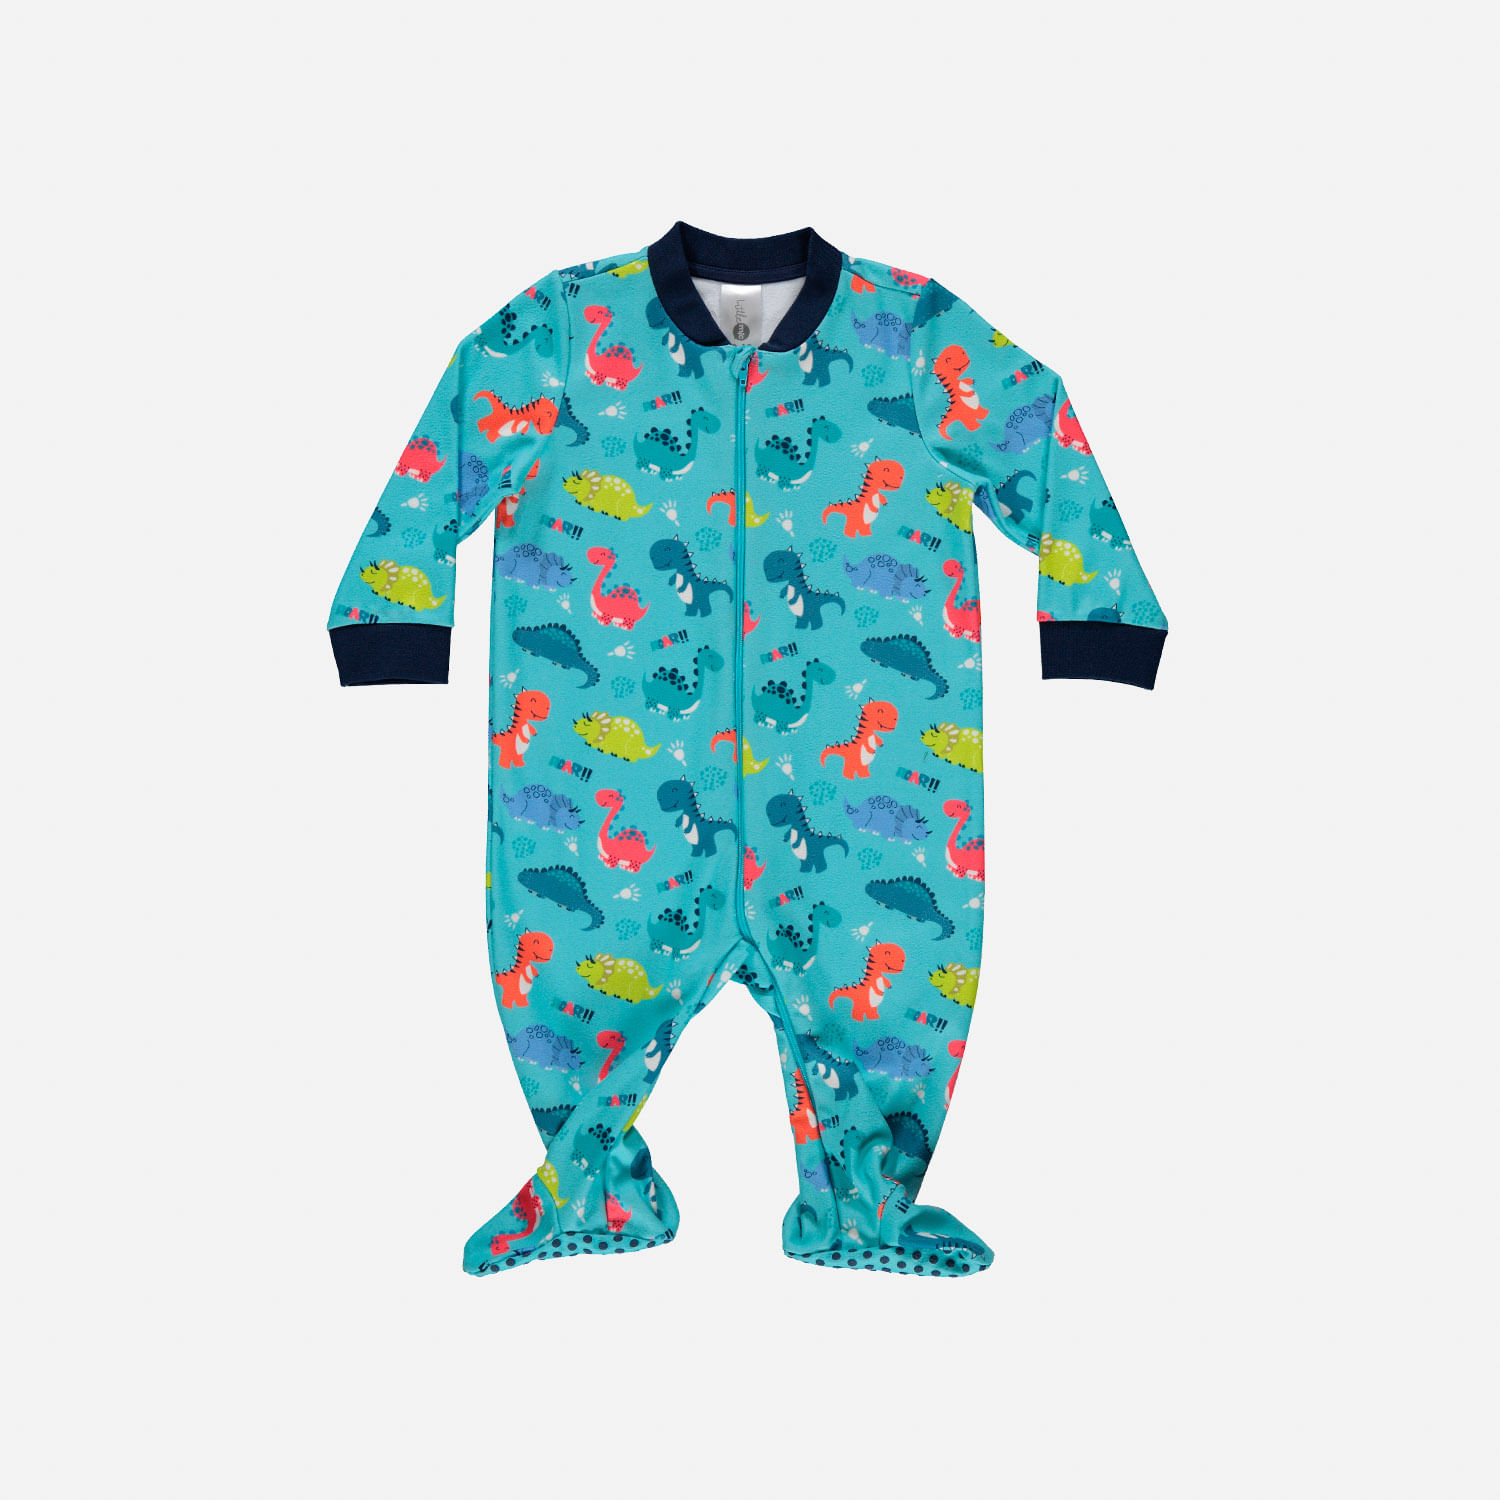 Pijama para bebé niño dinosaurios, manga larga de LittleMIC.